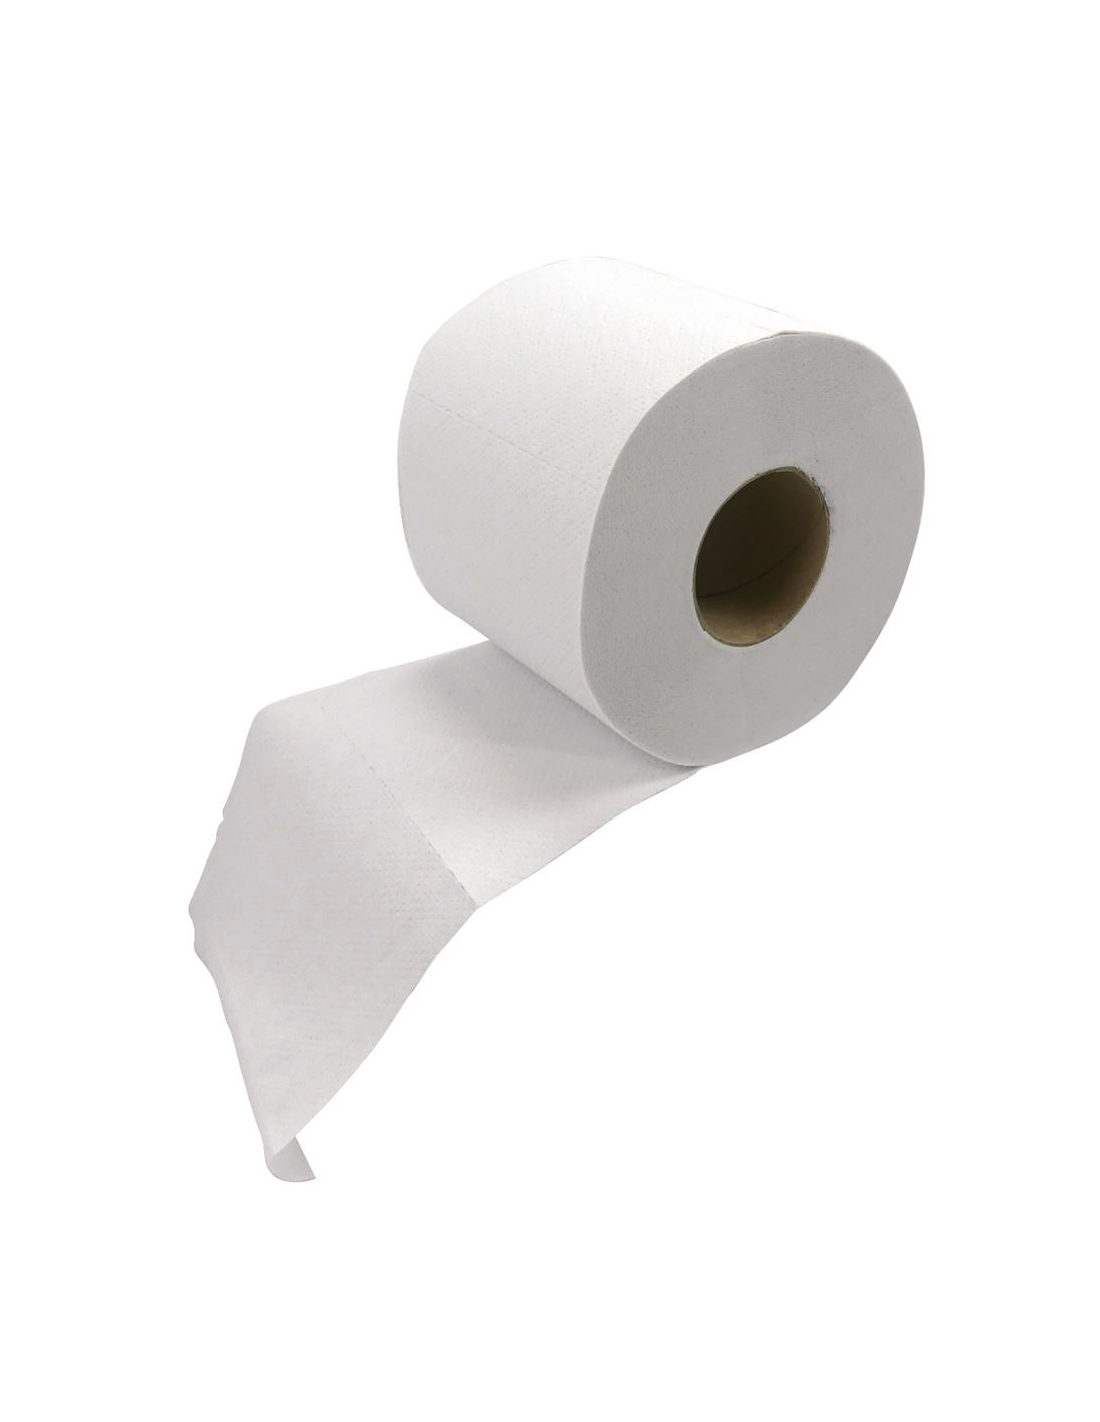 Gama de Escalofriante caricia Paquete de 36 rollos papel higiénico industrial 400 hojas ECOLABEL